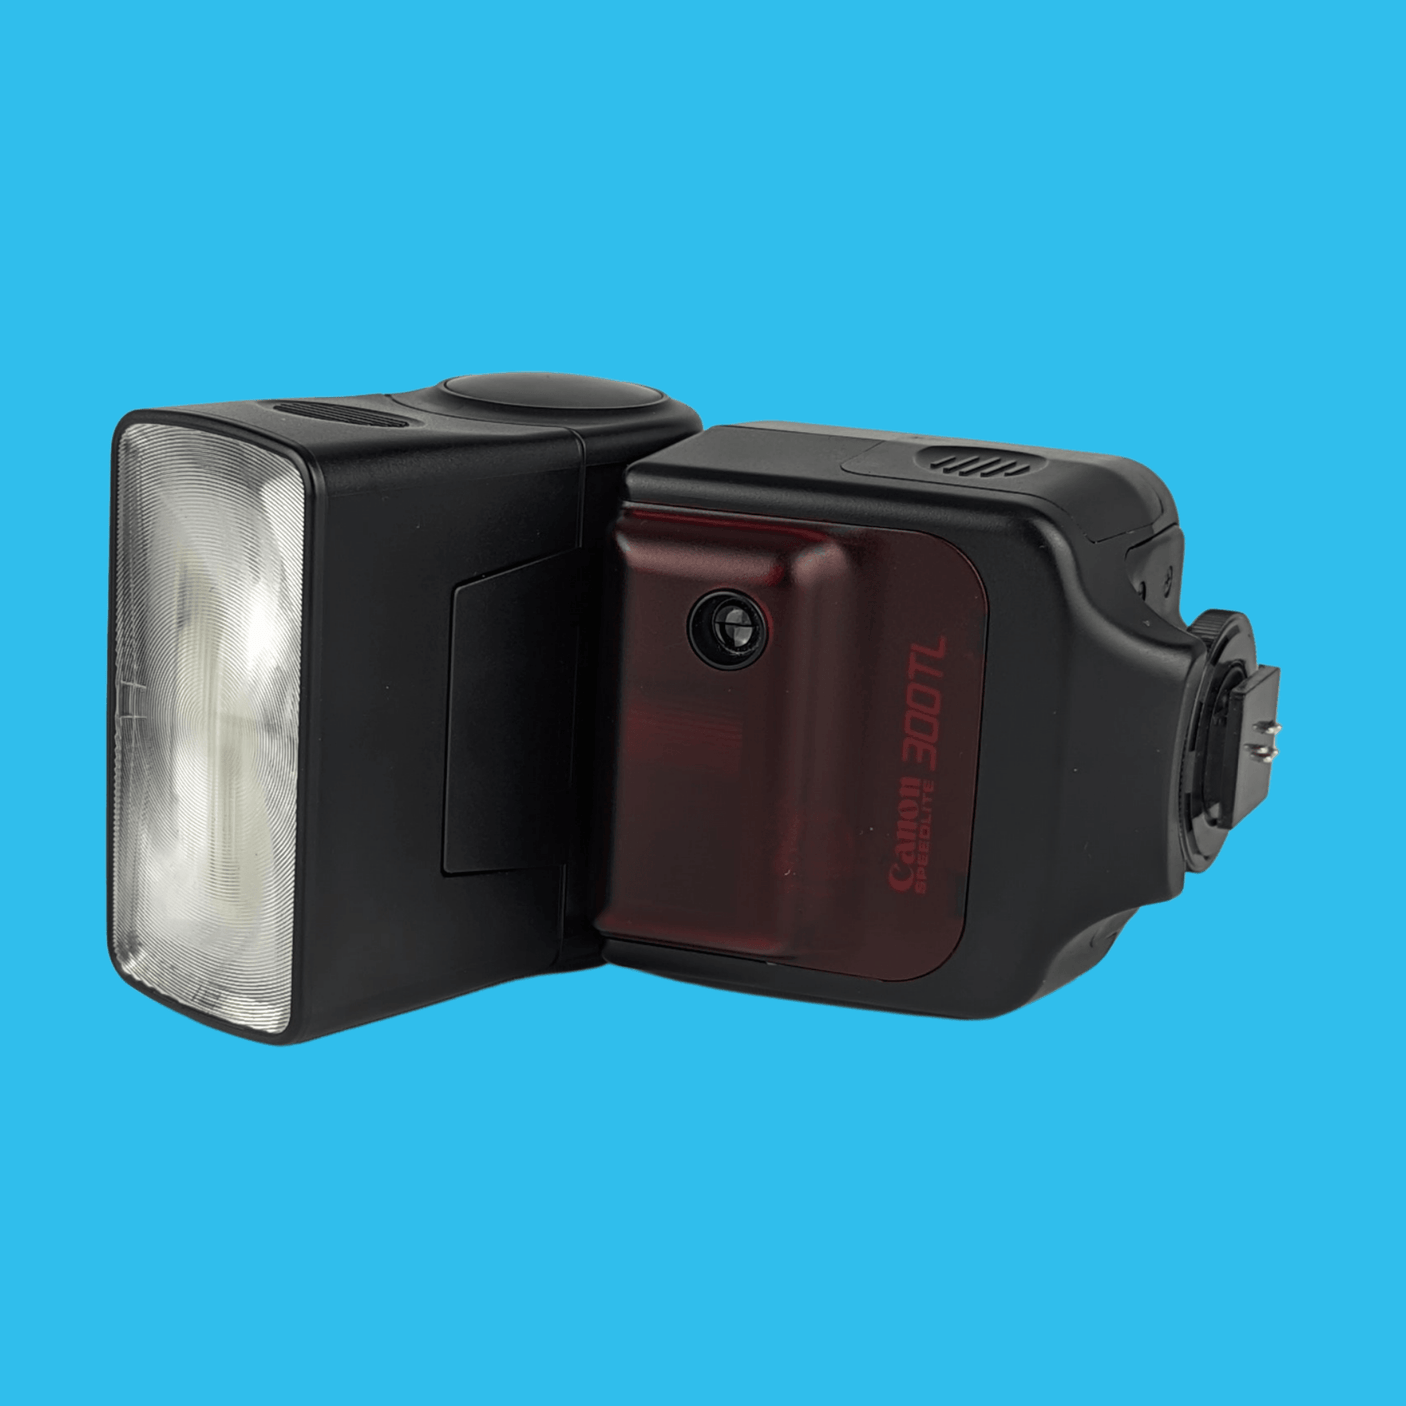 Flash externe Canon 300TL Speedlite pour appareil photo argentique